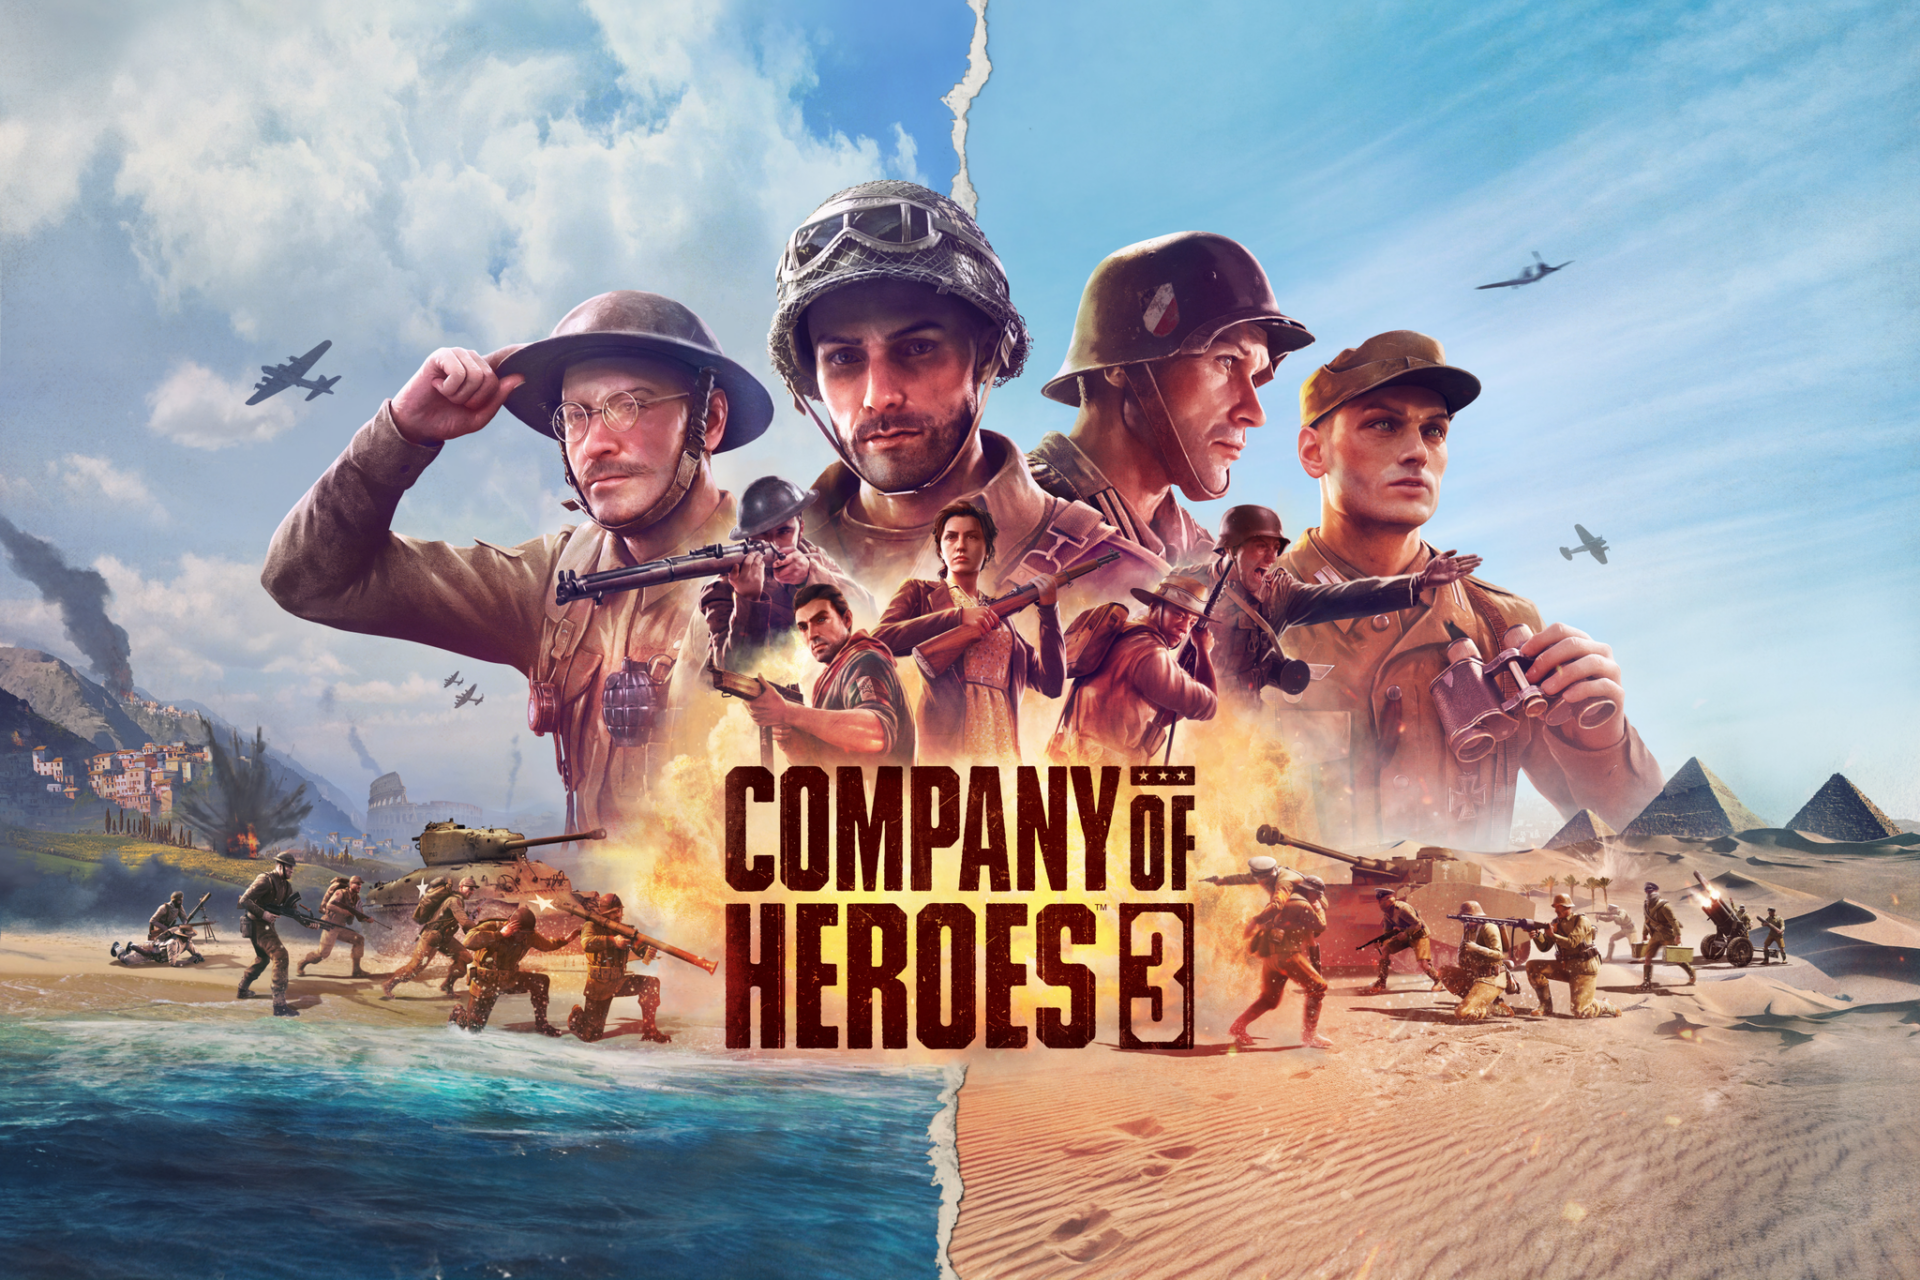 Company of Heroes 3 เผยเทรลเลอร์ล่าสุด พร้อมวางจำหน่าย 24 กุมภาพันธ์ 2023